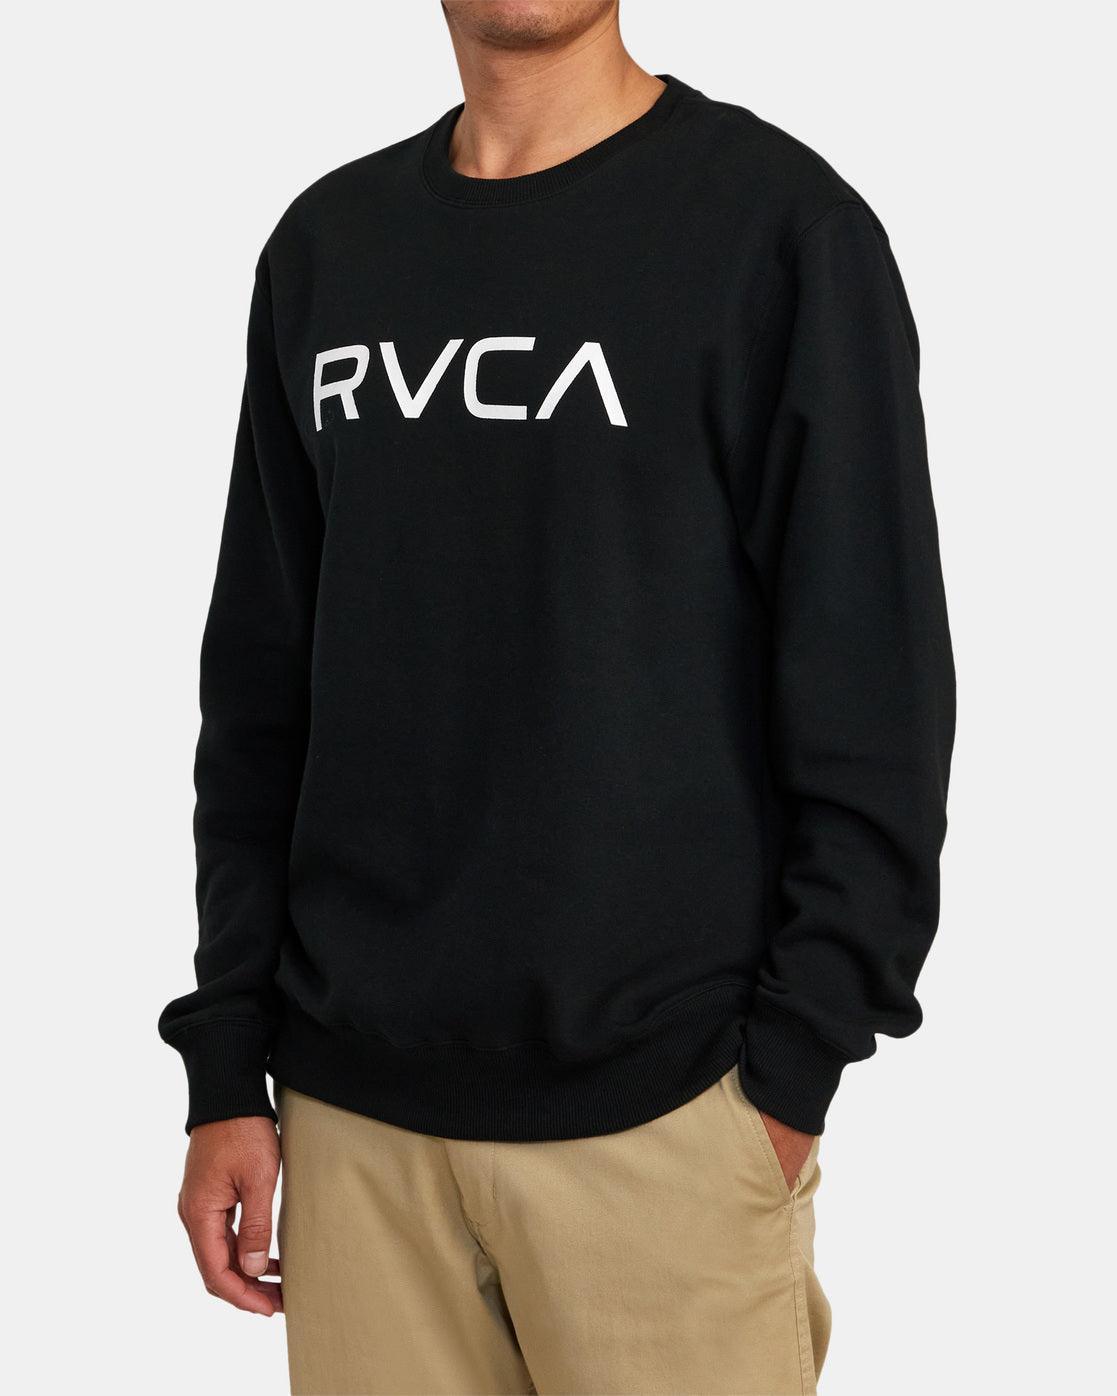 Big RVCA Crew - SoHa Surf Shop